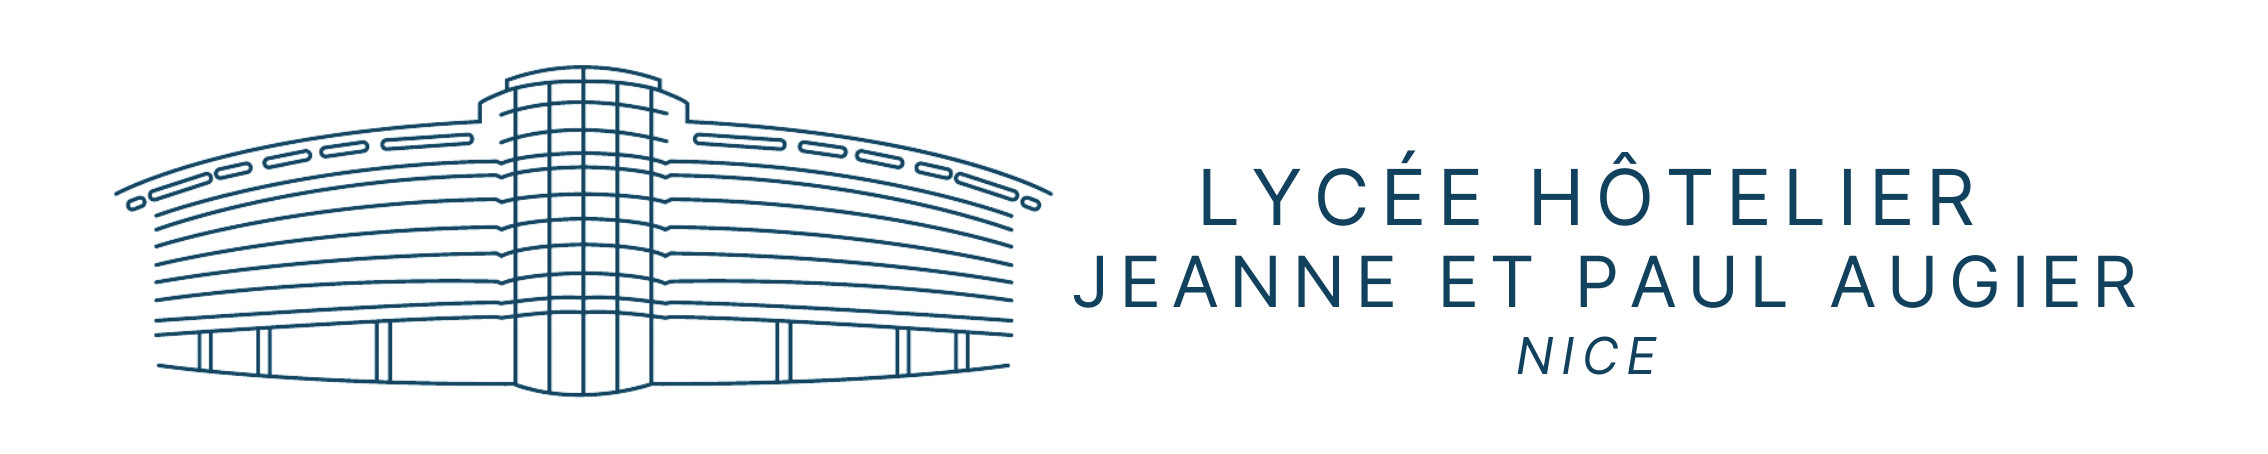 Logo Lycée hôtelier Nice Jeanne et Paul Augier (60 × 12)